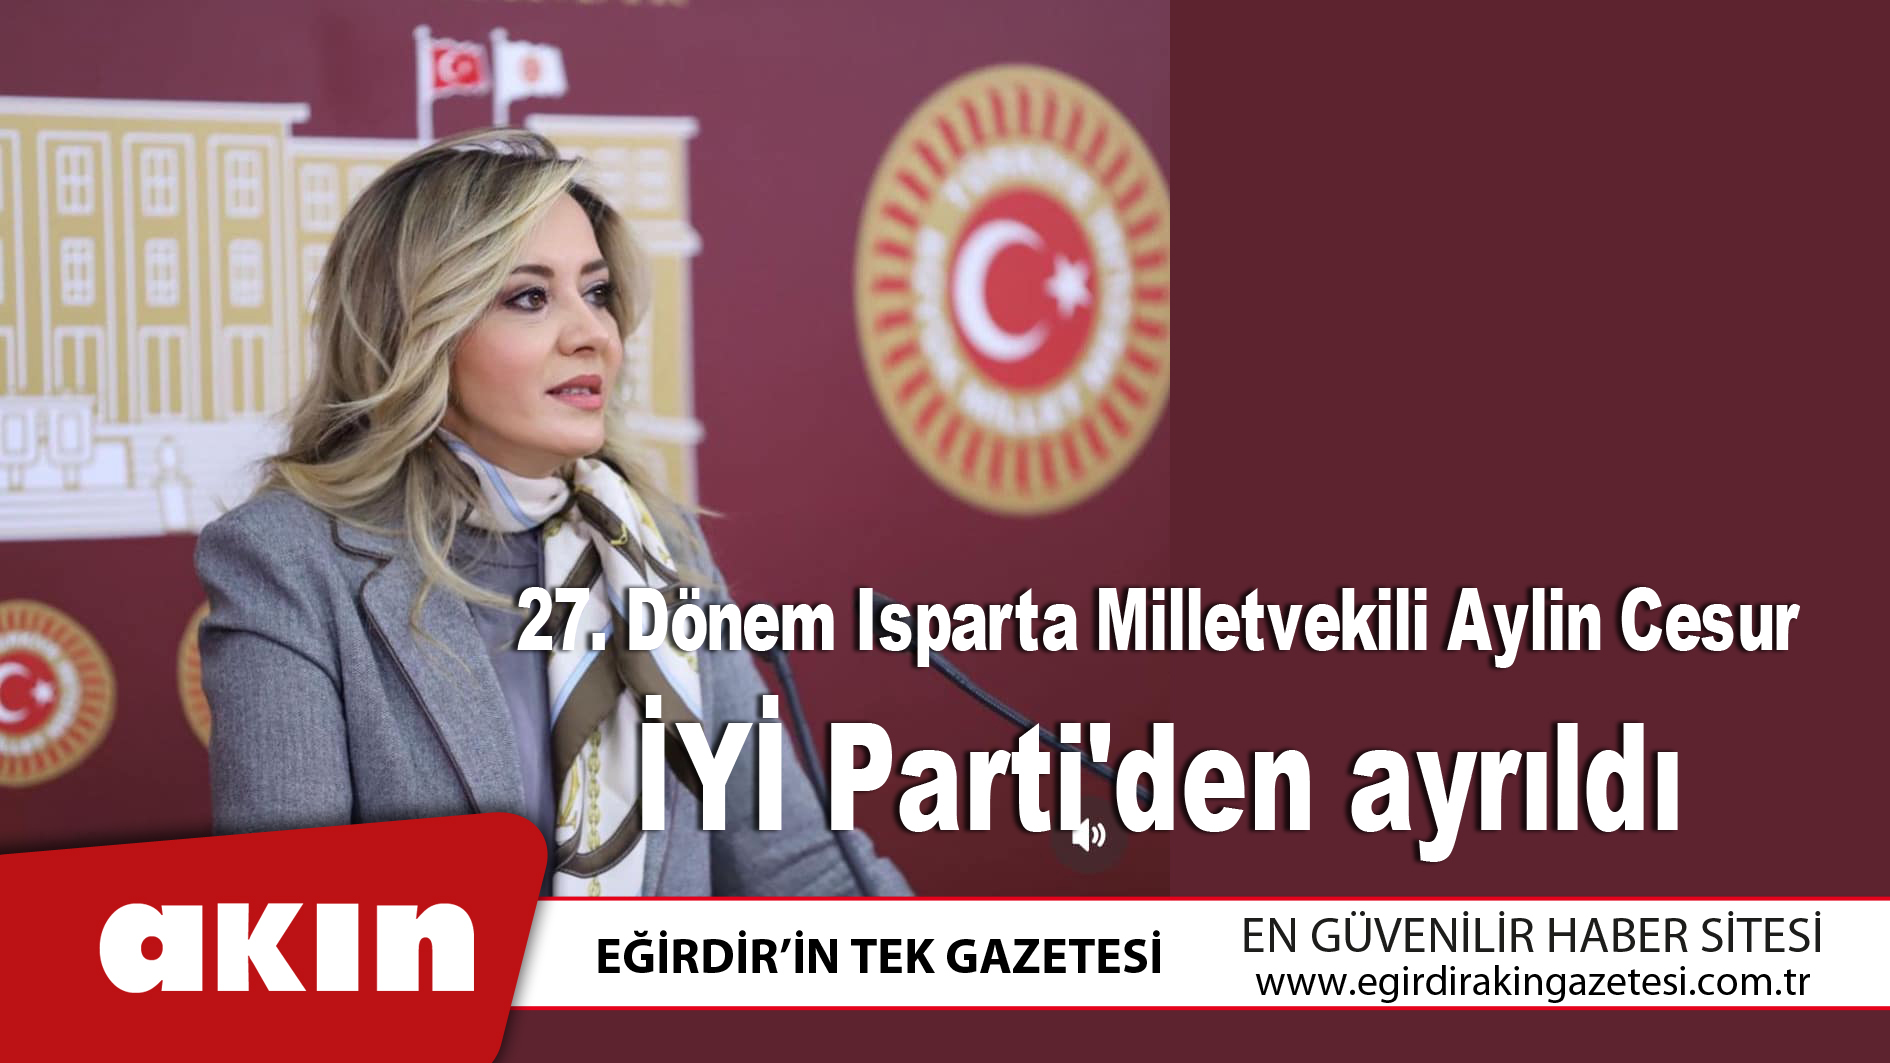 27. Dönem Isparta Milletvekili Aylin Cesur, İYİ Parti'den ayrıldı